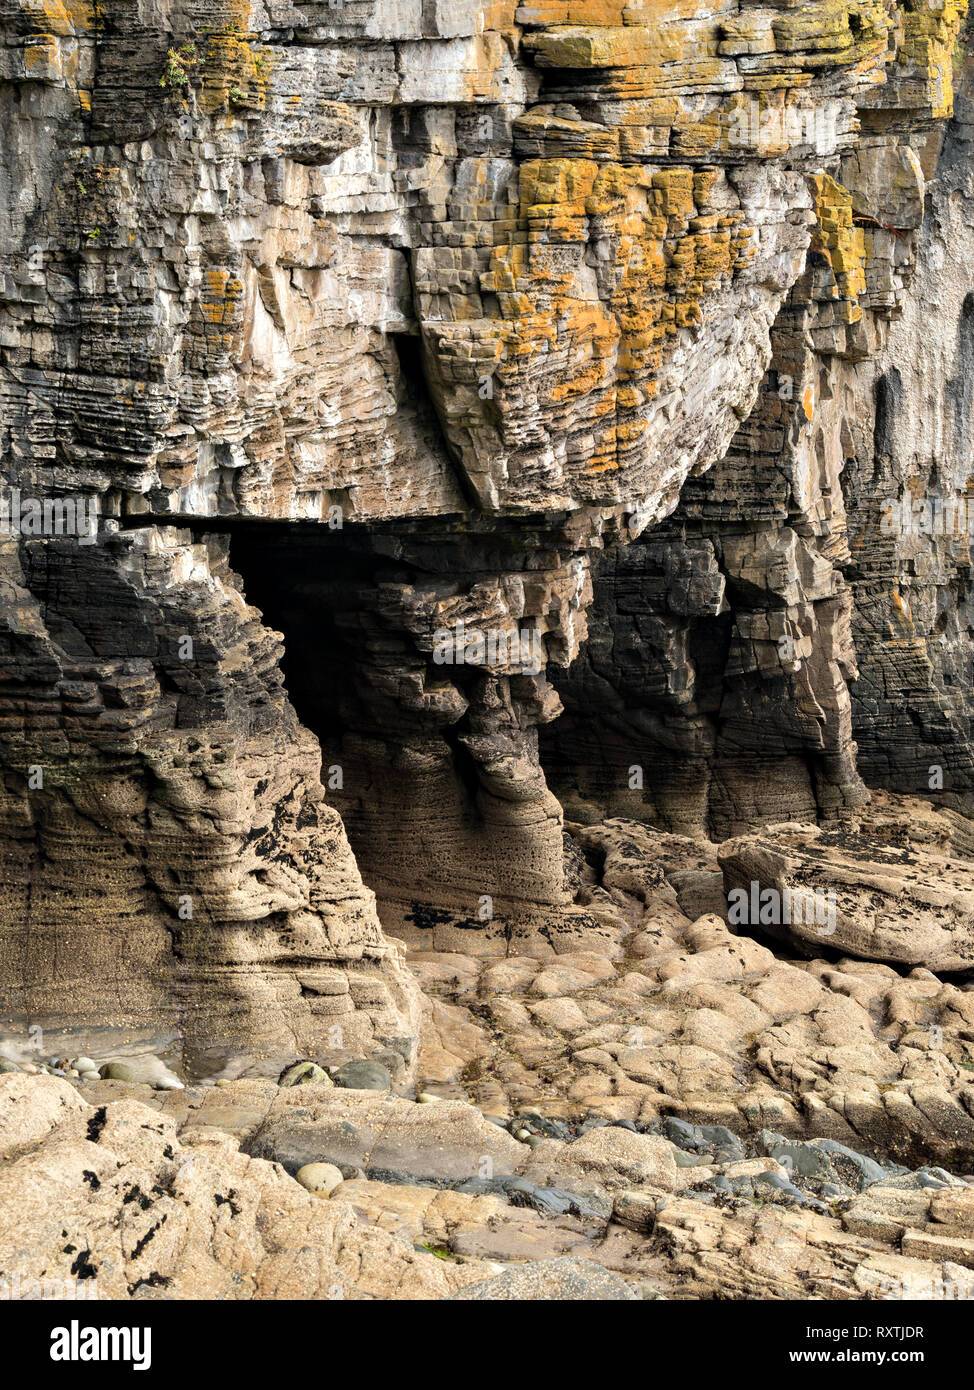 Les roches érodées de falaises et grottes sur la mer près du rivage Elgol sur l'île écossaise de Skye, Écosse, Royaume-Uni Banque D'Images